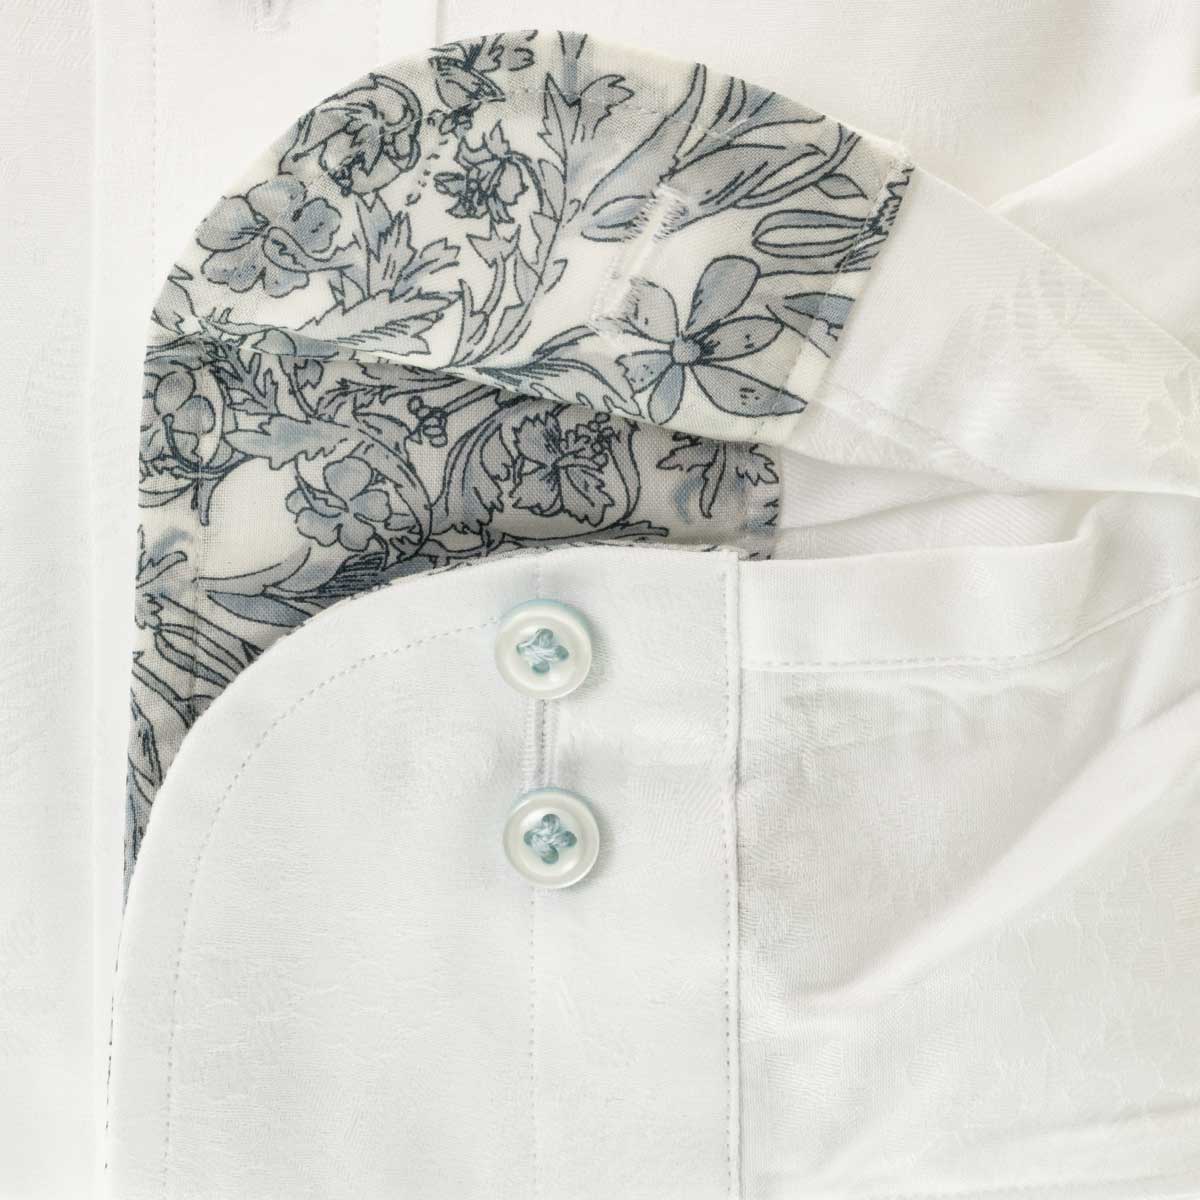 ワイシャツ 花柄 ホワイト ジャガード スリムフィット STYLE WORKS